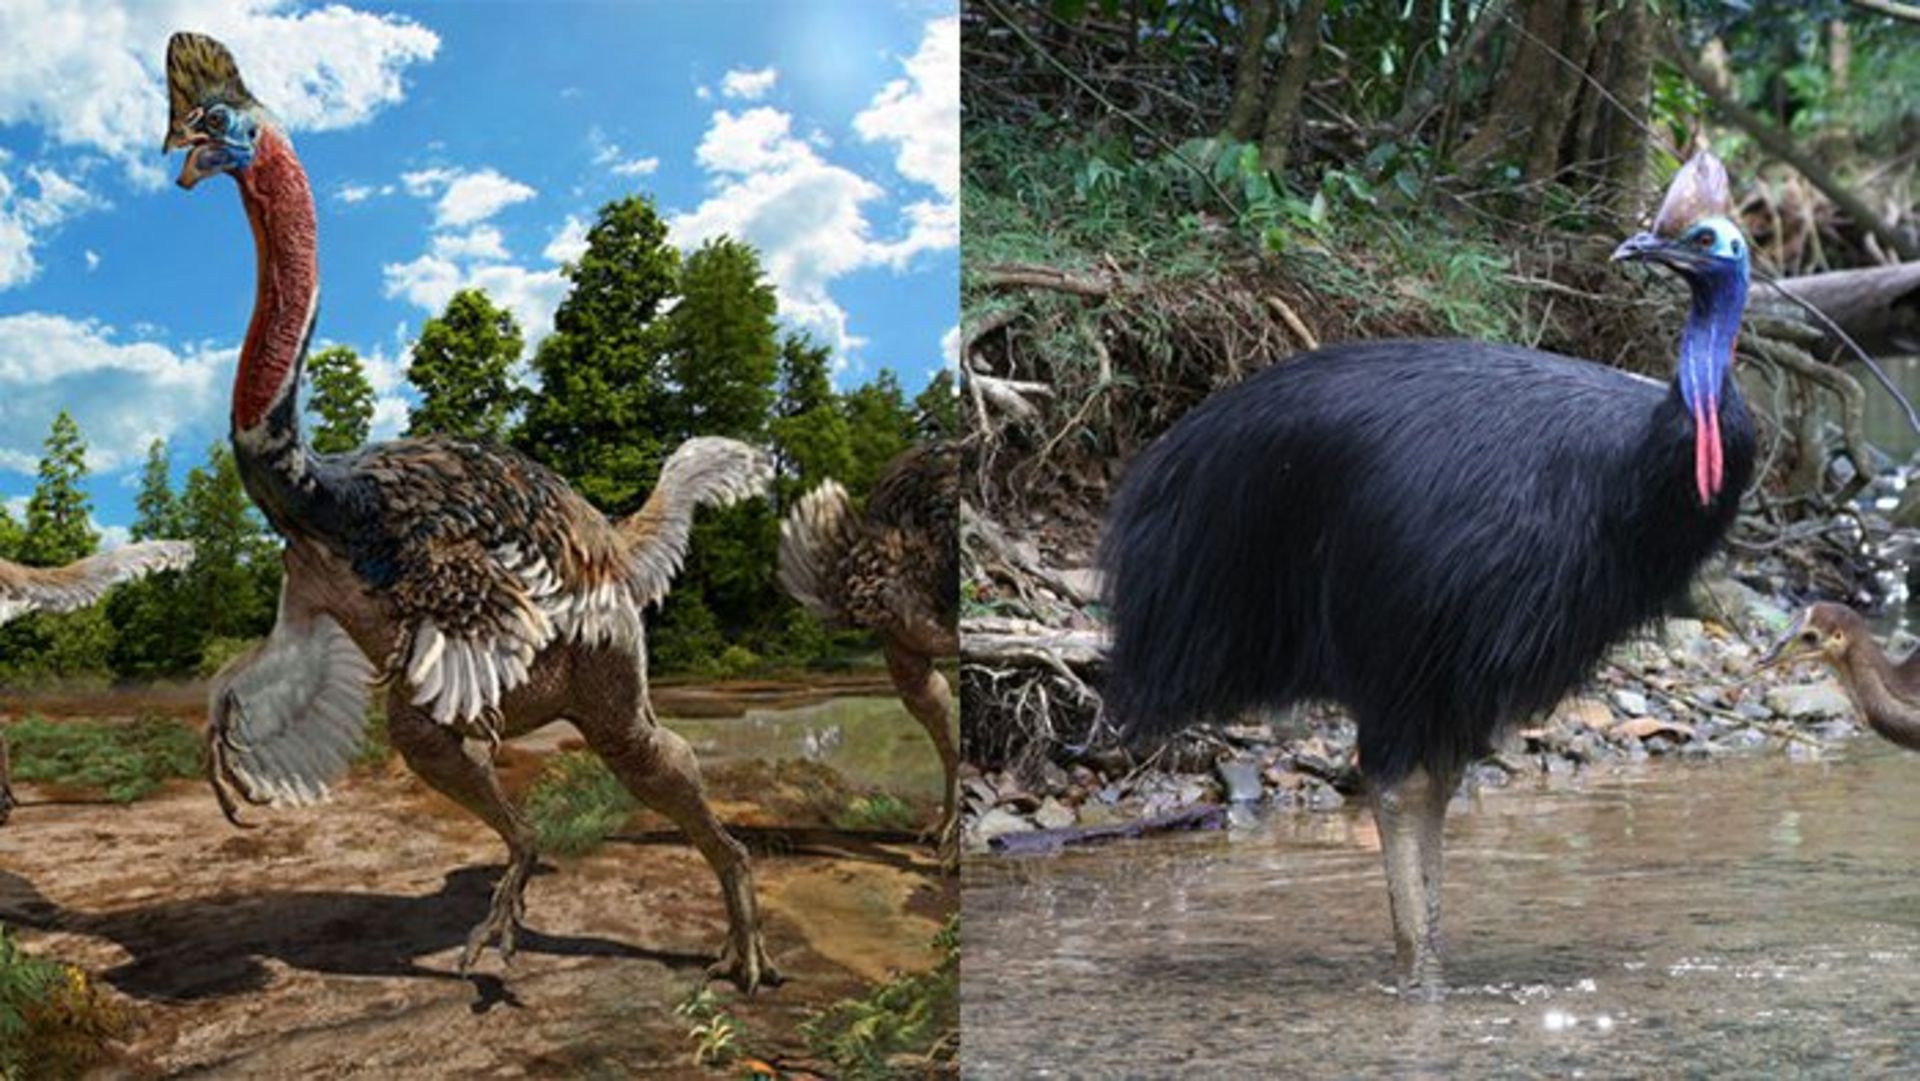 مرجع متخصصين ايران كوريتوراپتور ژاكوبي /Corythoraptor jacobsi